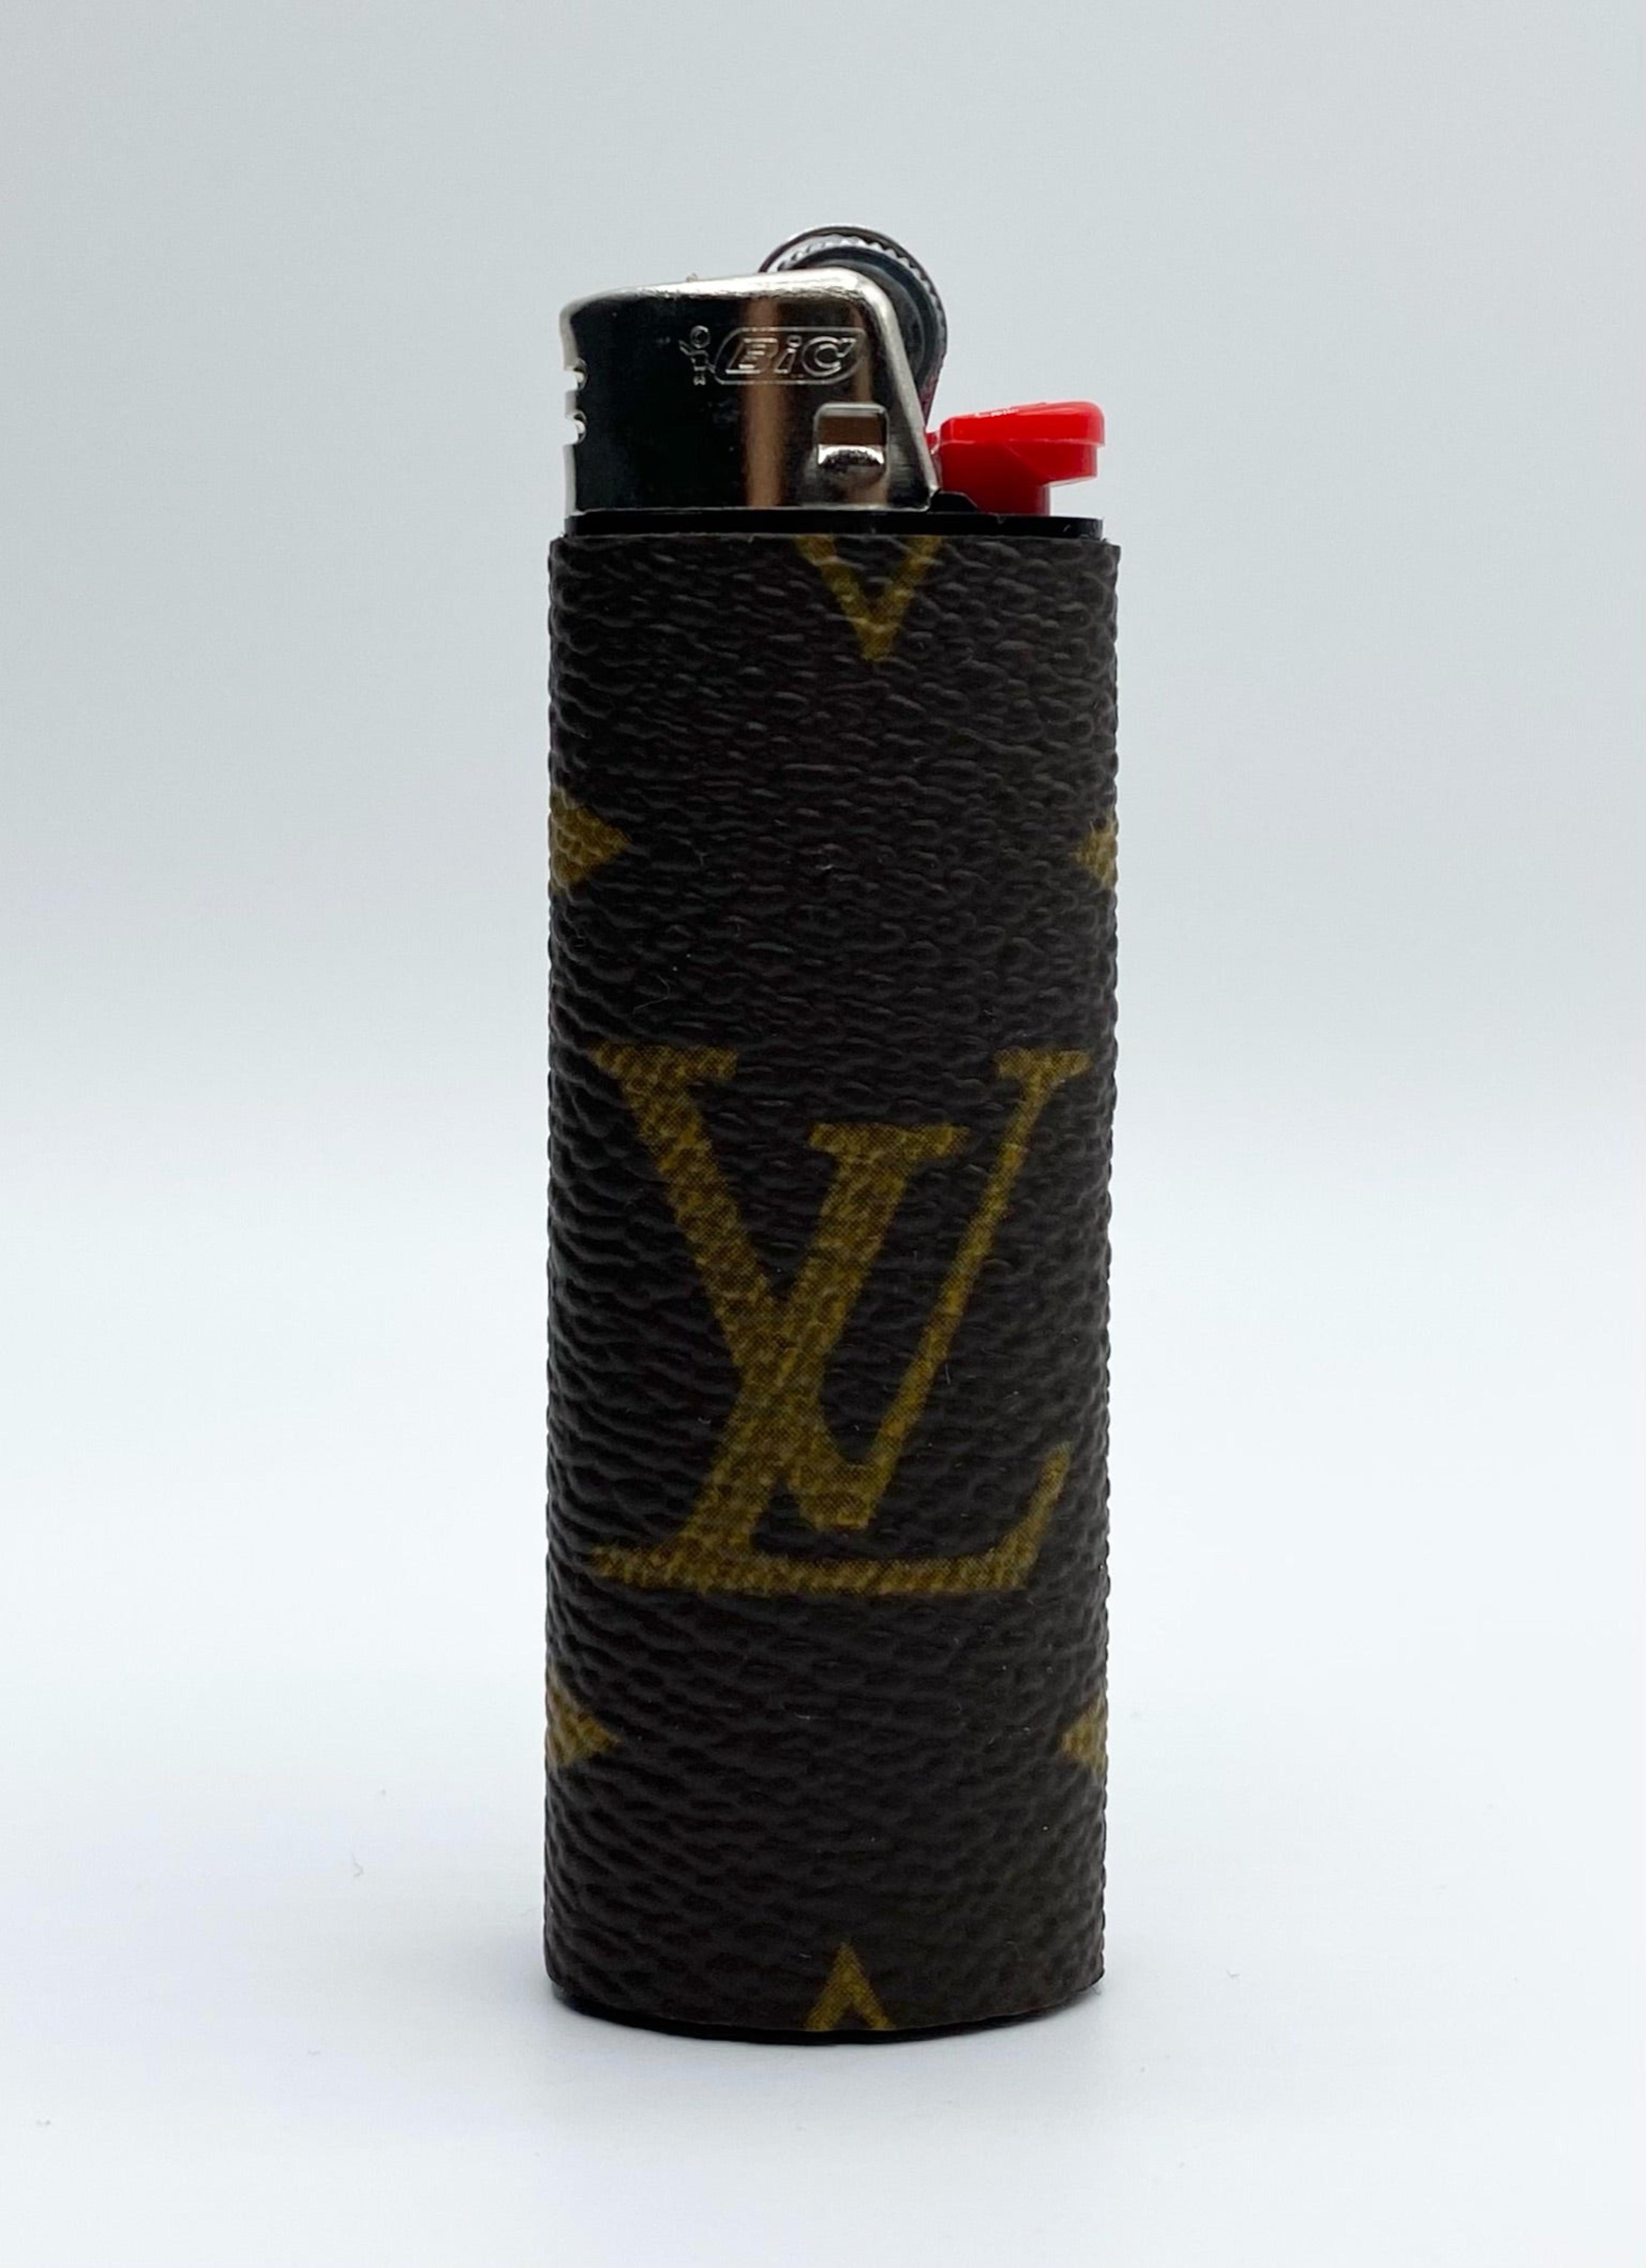 Lv monogram lighter case